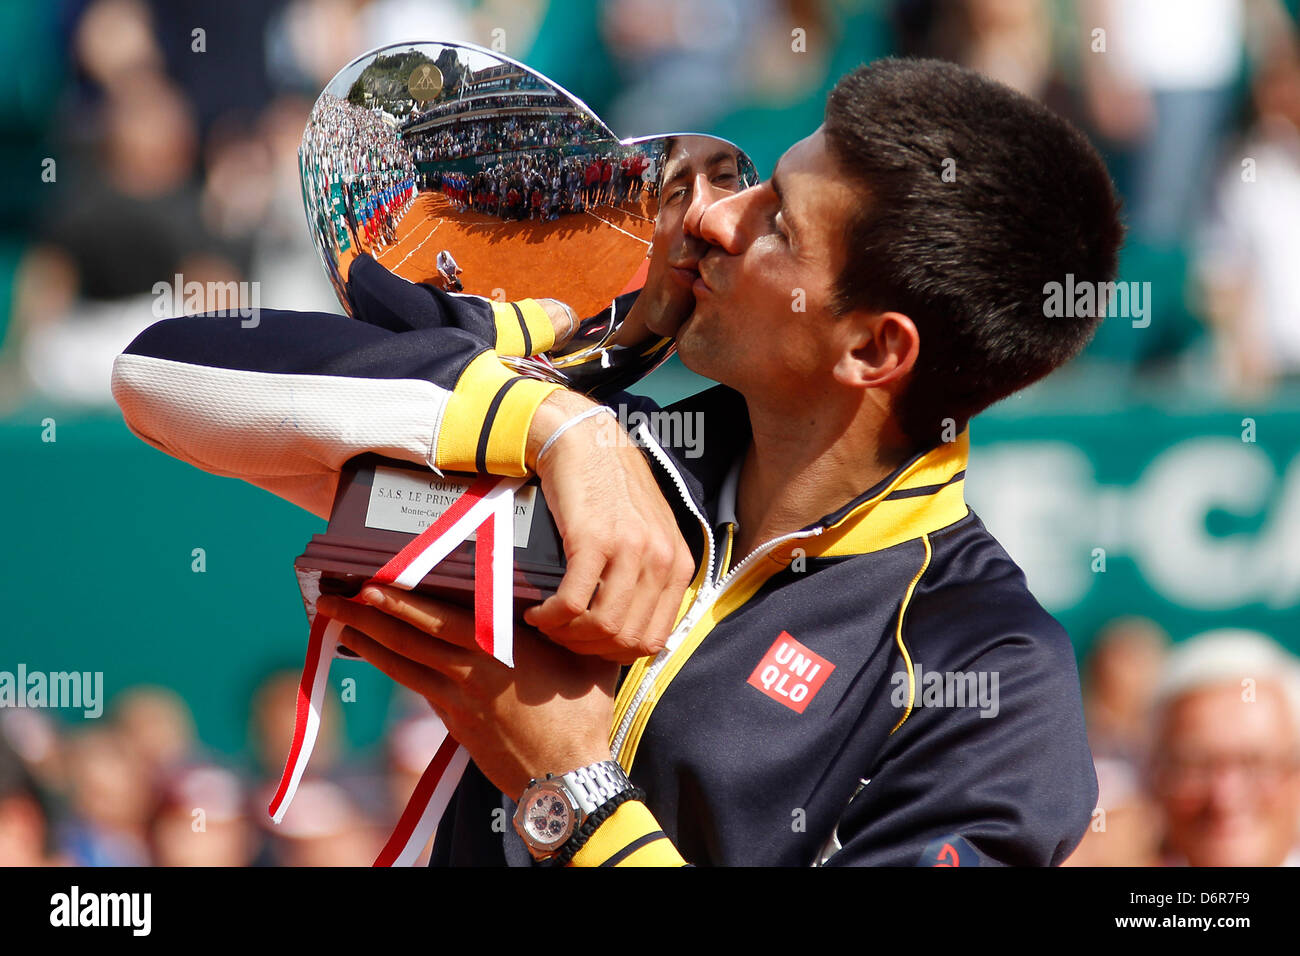 MONTE CARLO, Monaco - 21 de abril: Novak Djokovic de Serbia con el trofeo  tras ganar el partido final de la ATP Masters de Monte Carlo, en  Monte-Carlo Sporting Club el 21